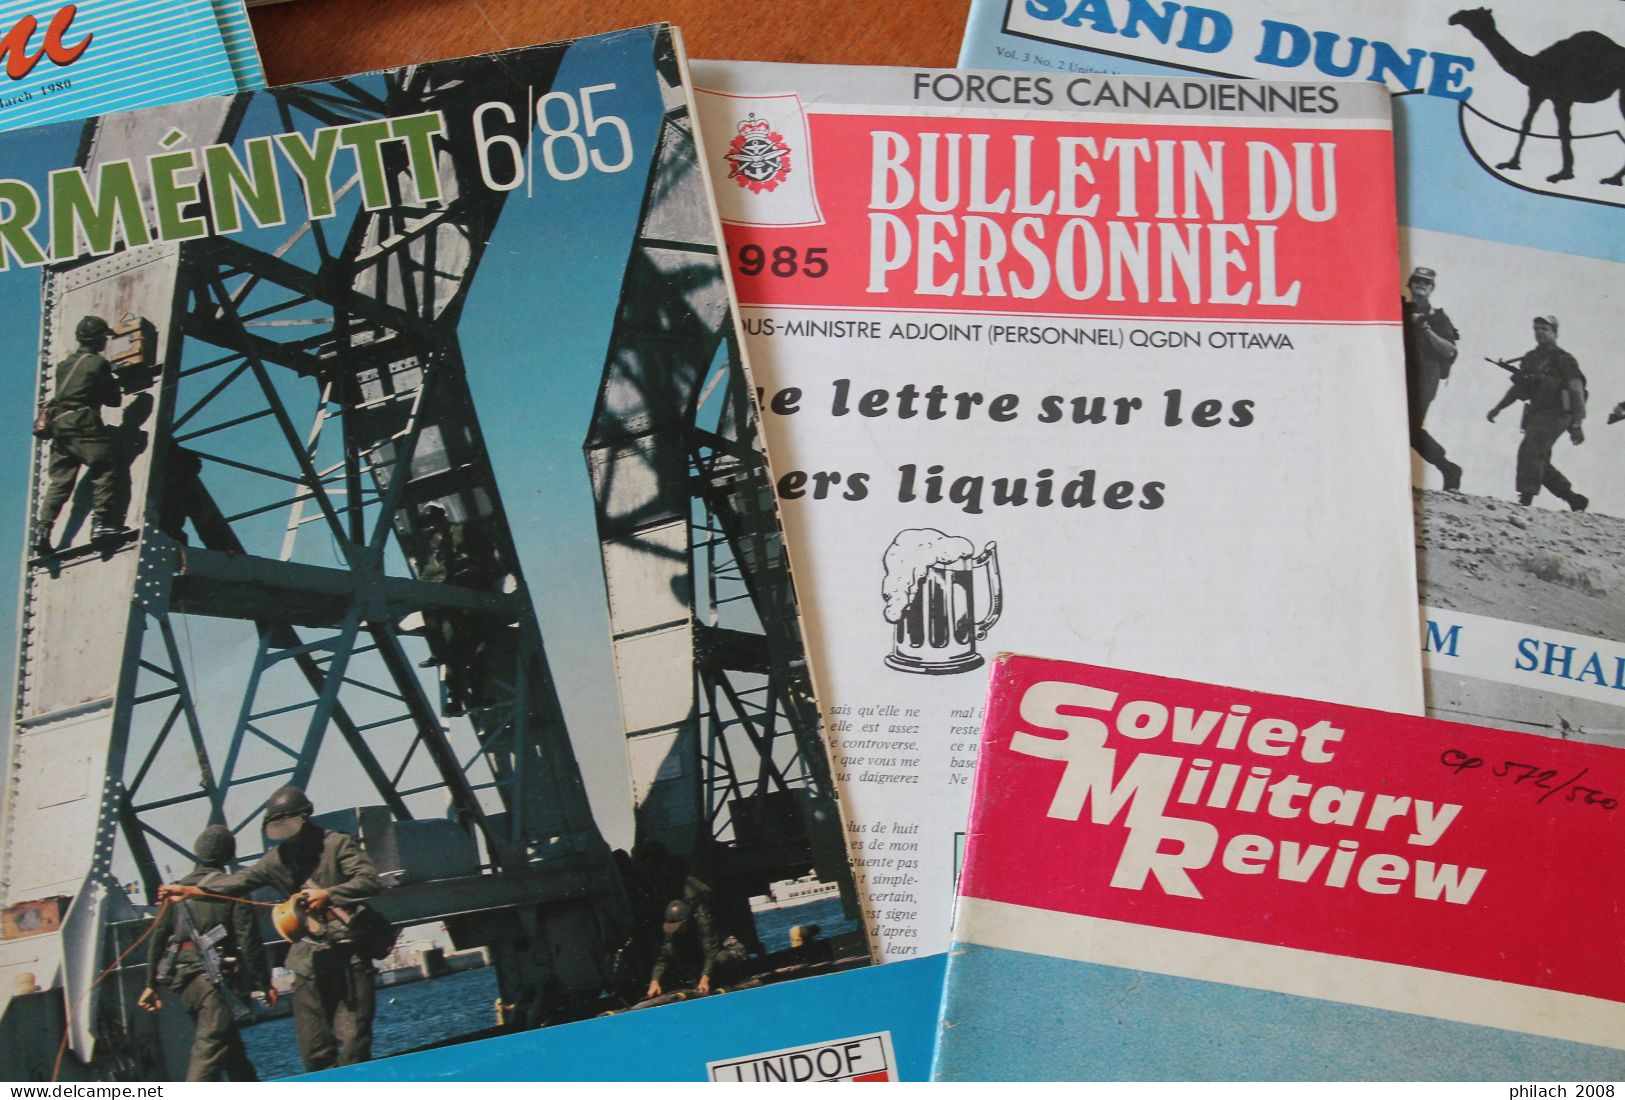 Lot de 27 revues ramené par un casque bleu français dans le Sinai entre 75 et 85